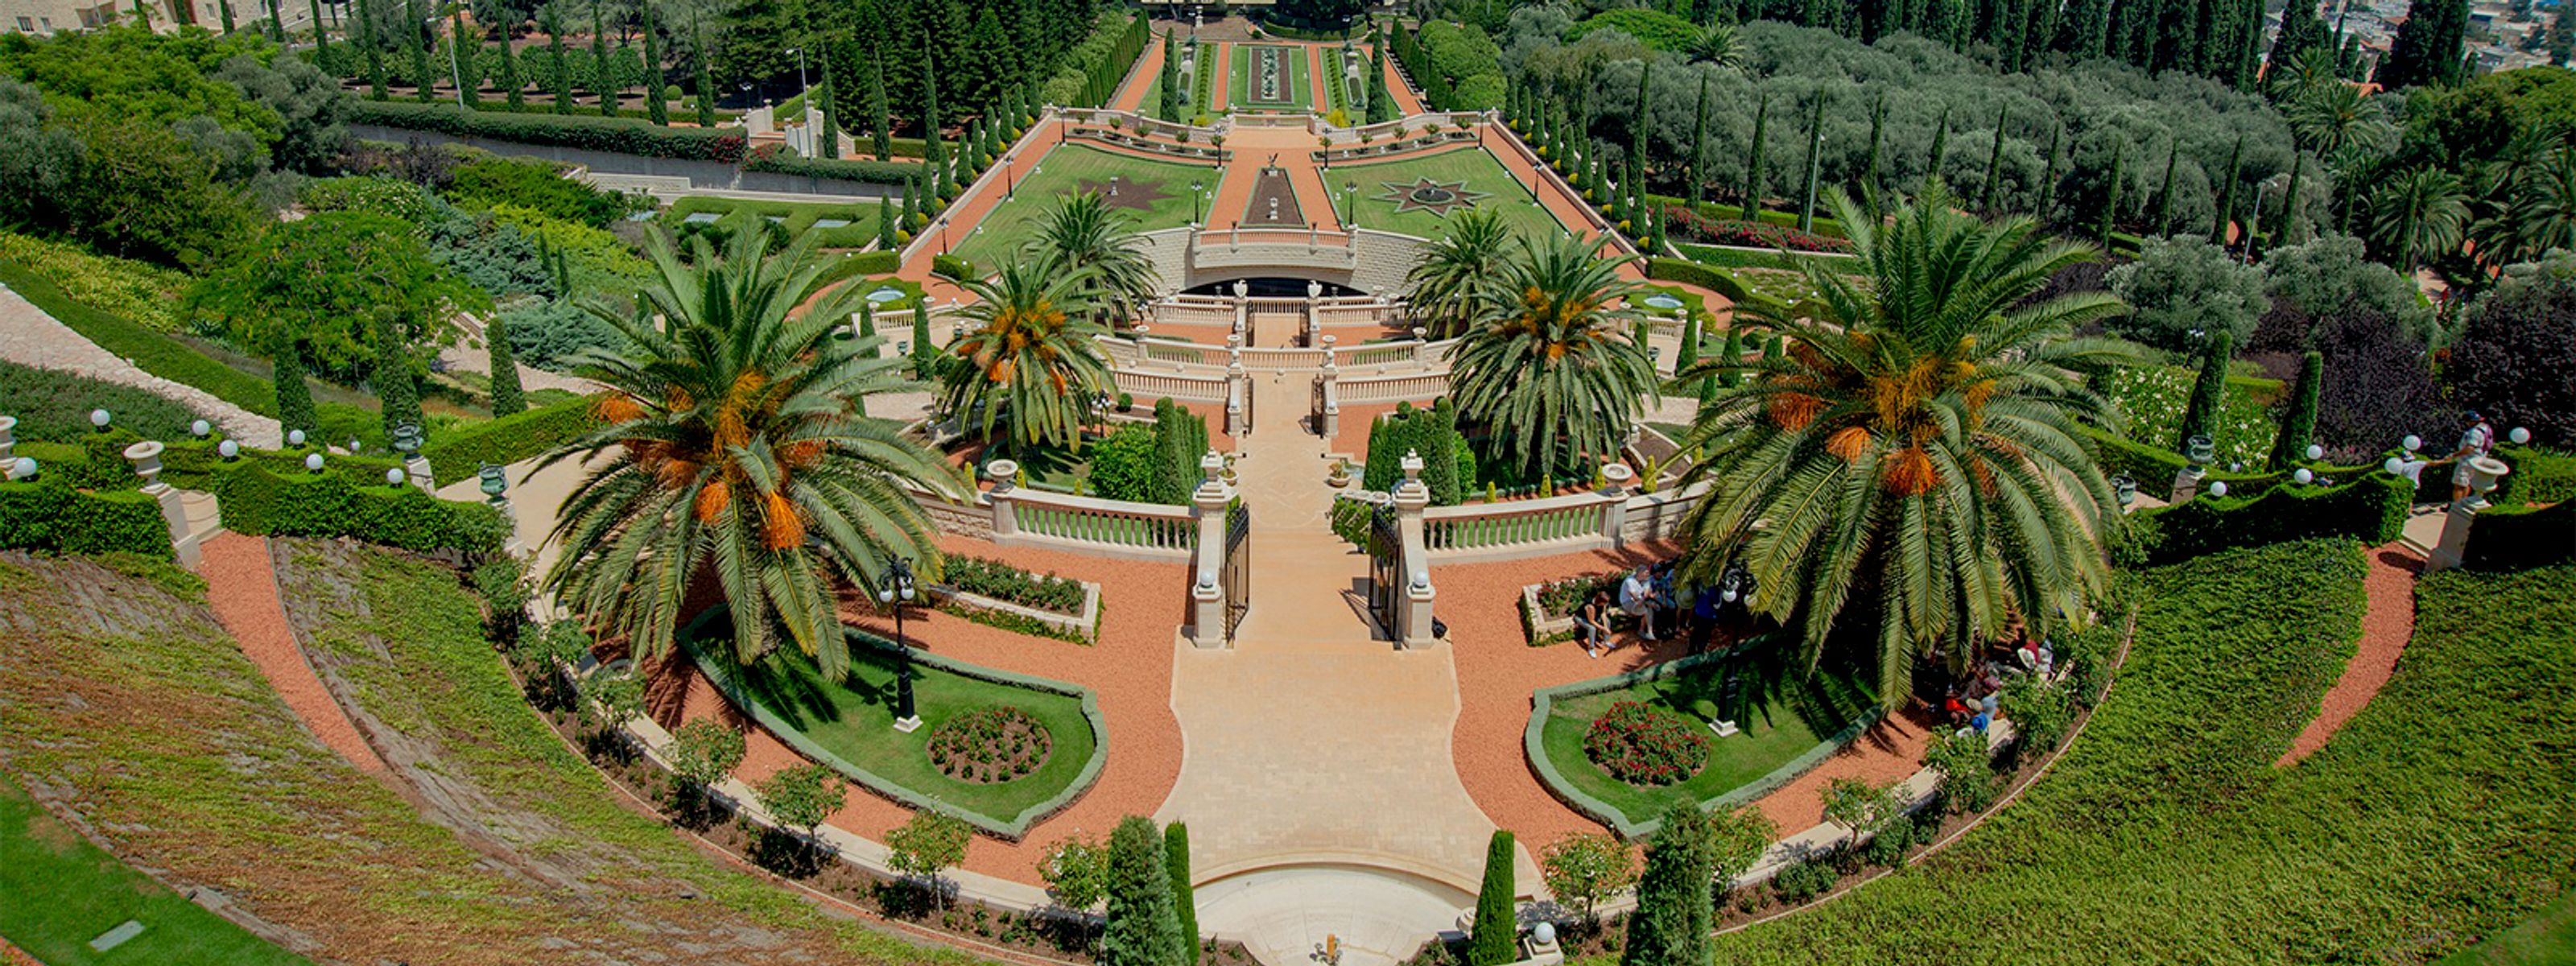 Haifa Garden